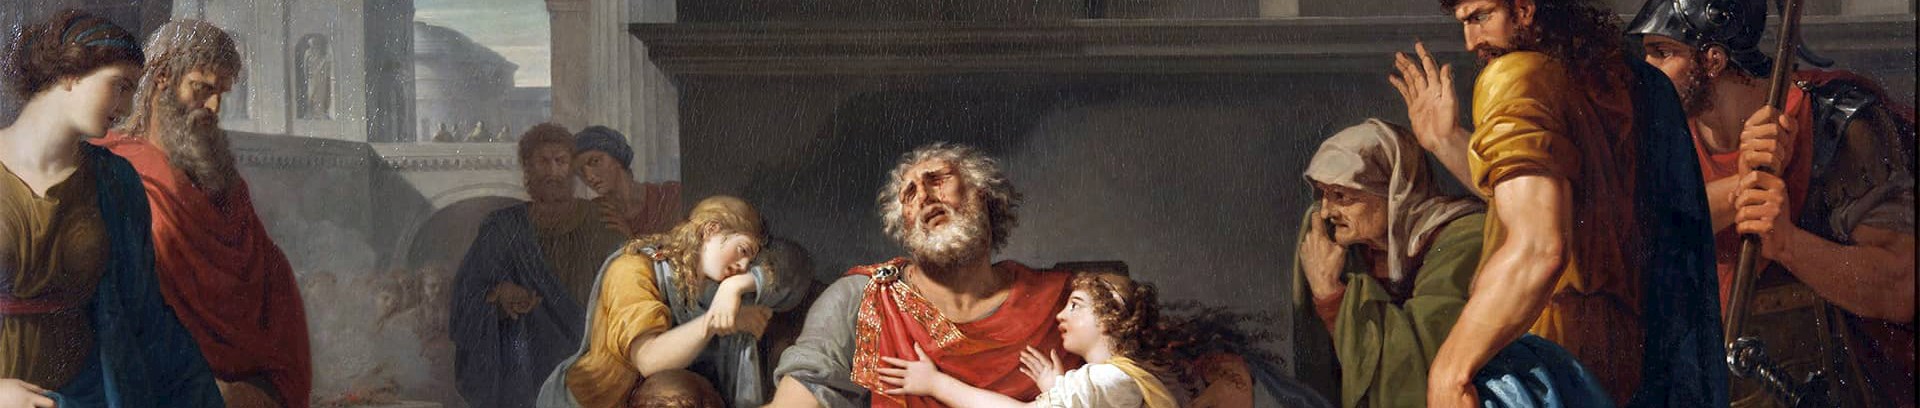 Billede af et maleri af Sofokles tragedier